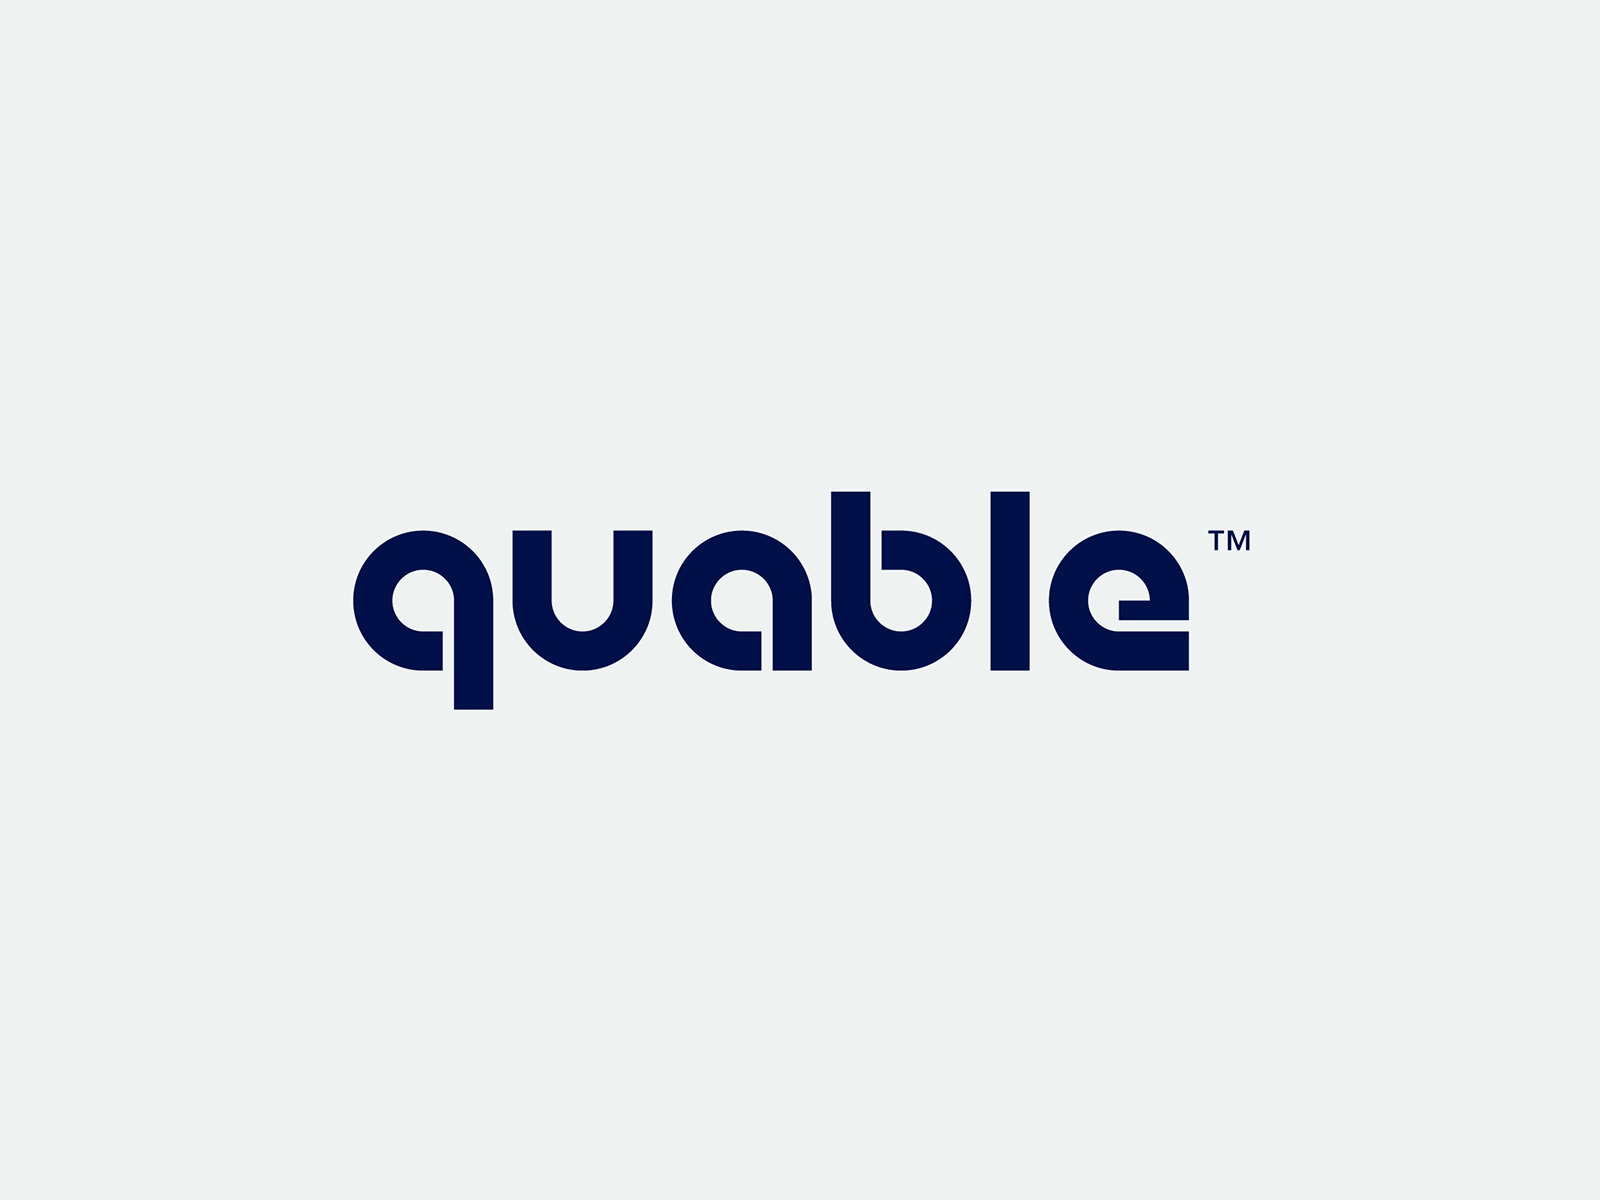 Quable types branding concept design identity logo type typography